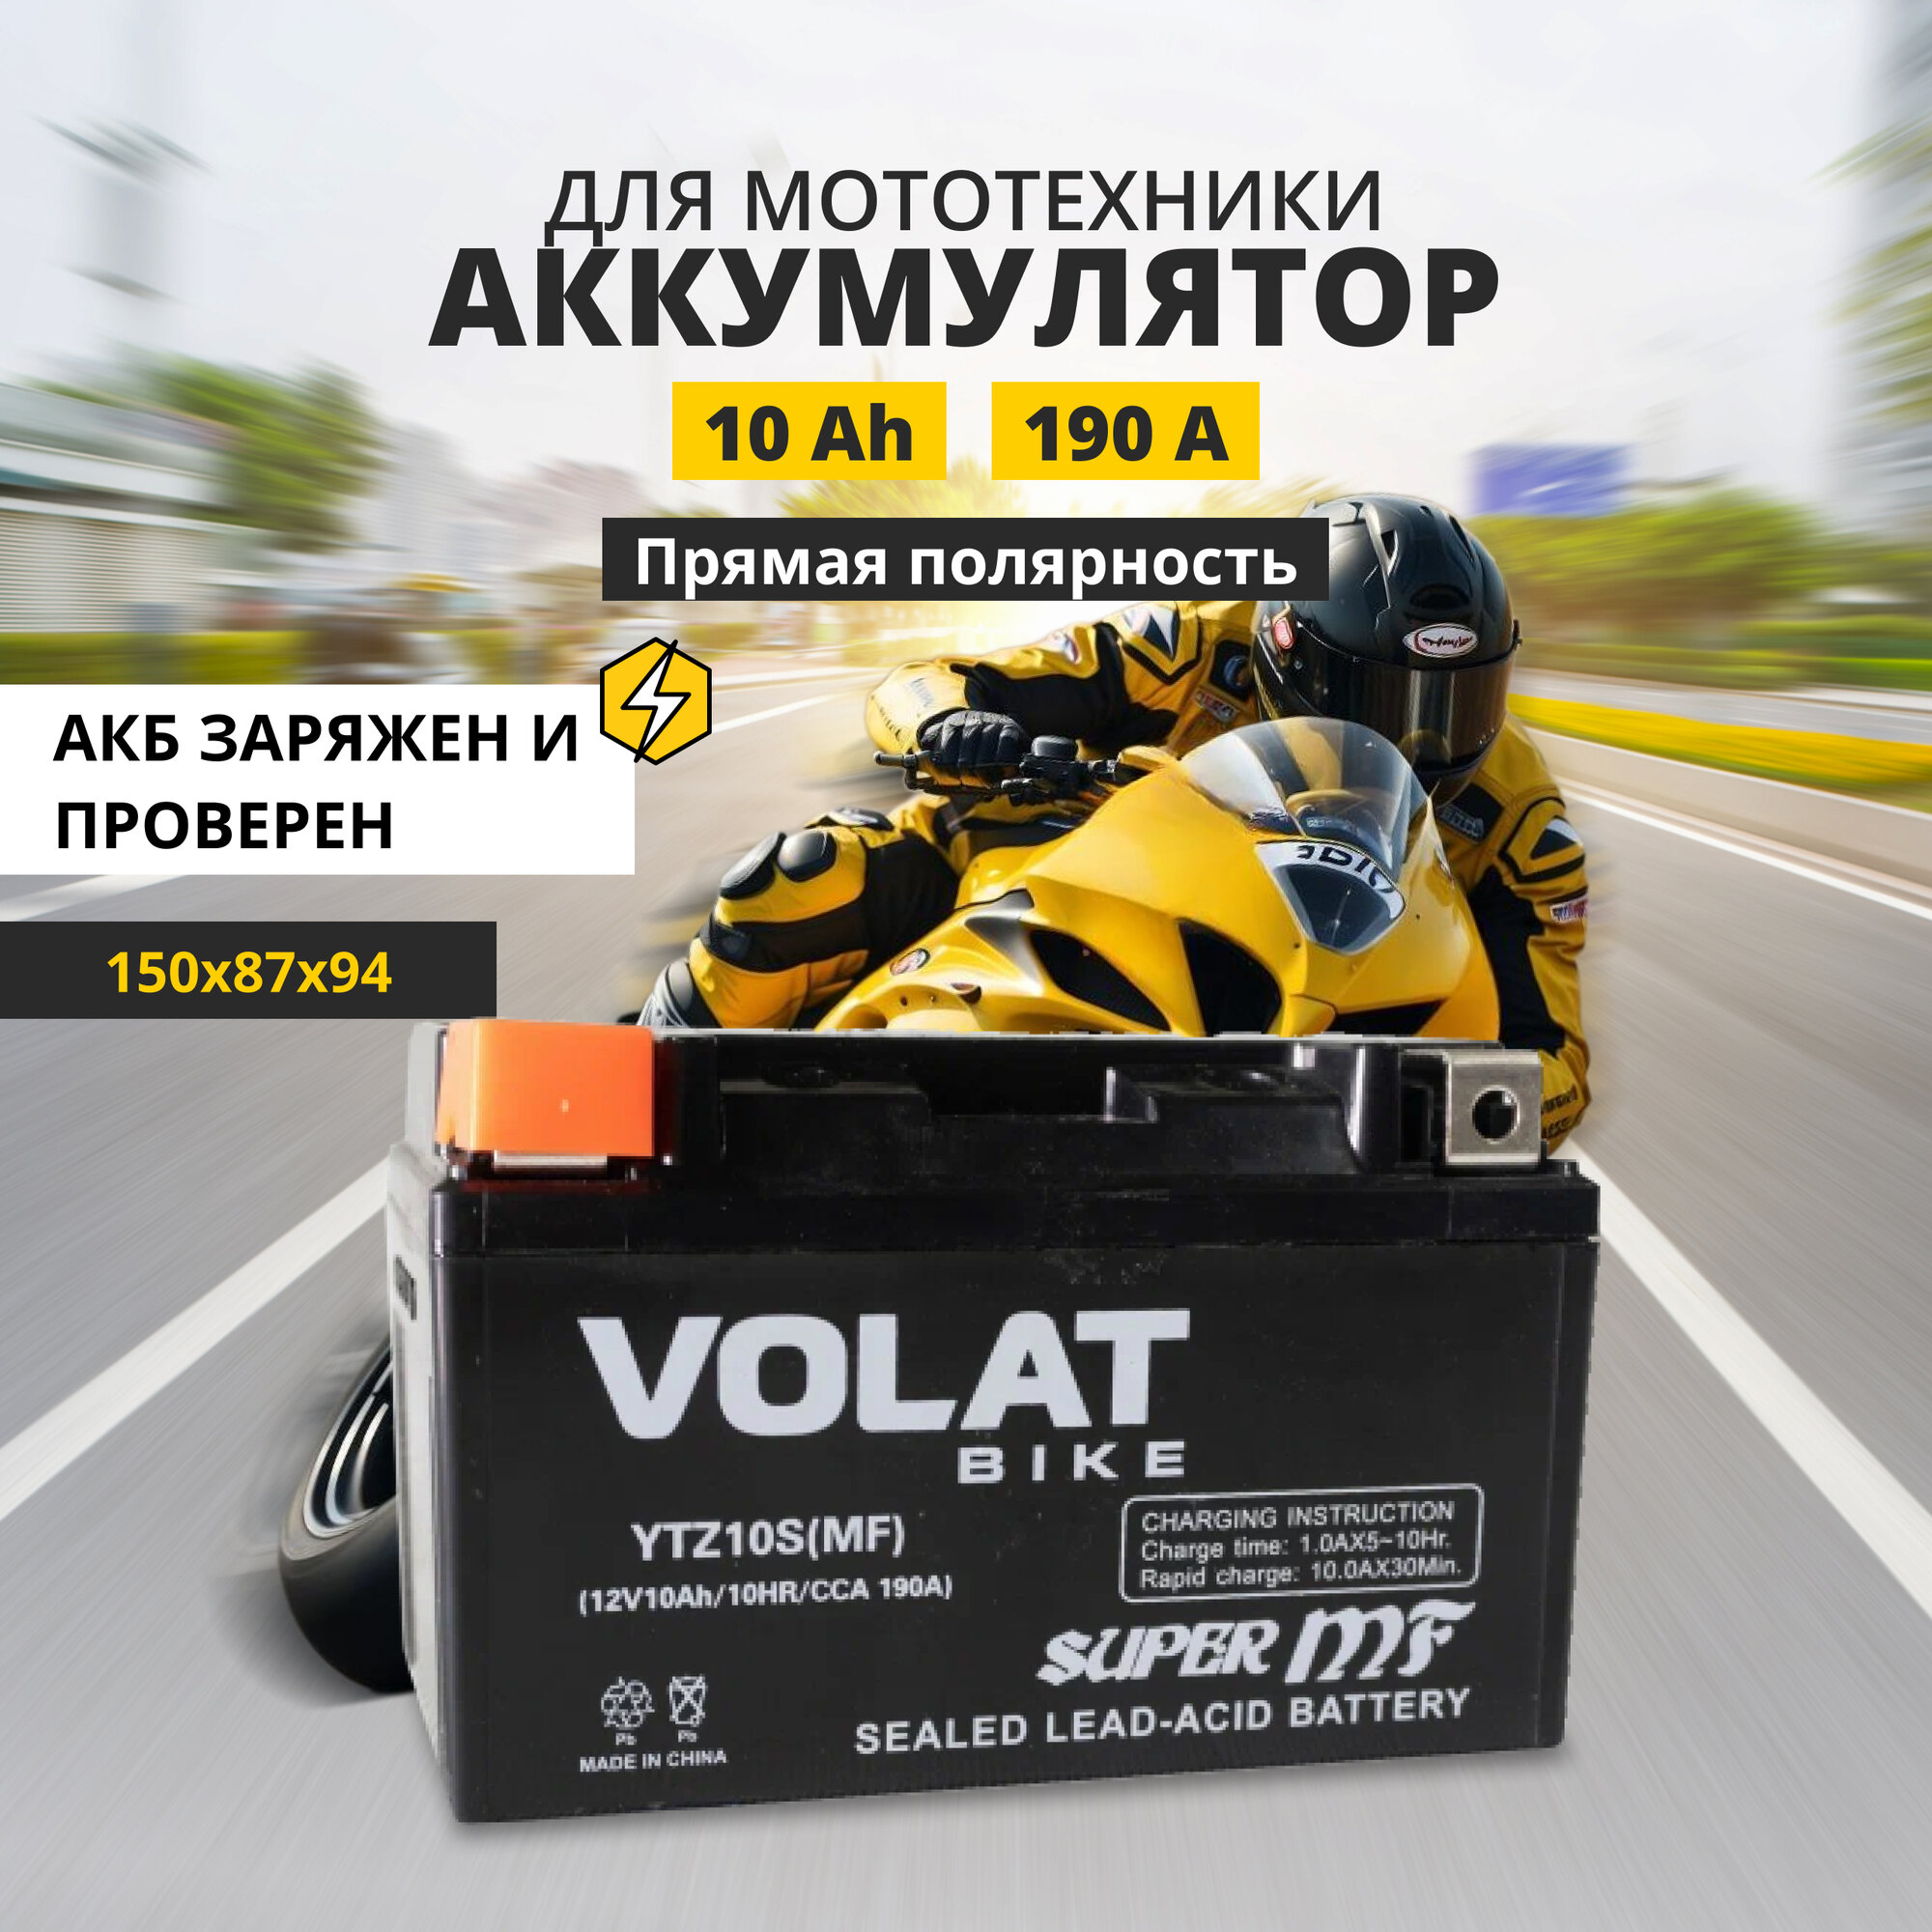 Аккумулятор для мотоцикла 12v Volat YTZ10S(MF) прямая полярность 10 Ah 190 A AGM, акб на скутер, мопед, квадроцикл 150x87x94 мм